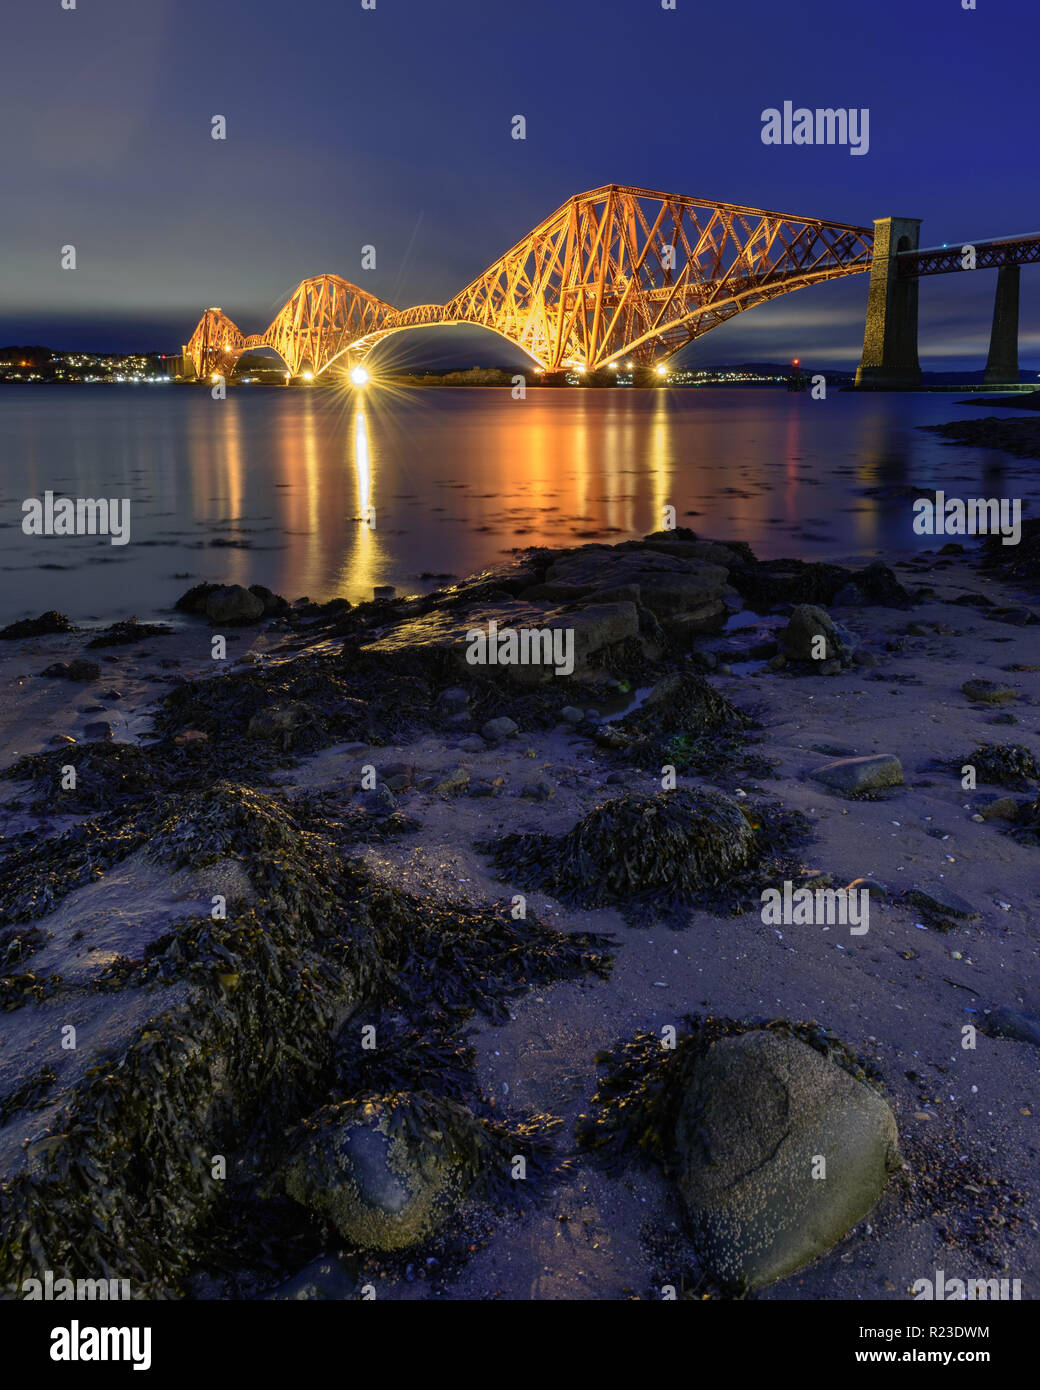 Il Forth Bridge è illuminata al tramonto del Firth of Forth a South Queensferry a Edimburgo, Scozia. Foto Stock